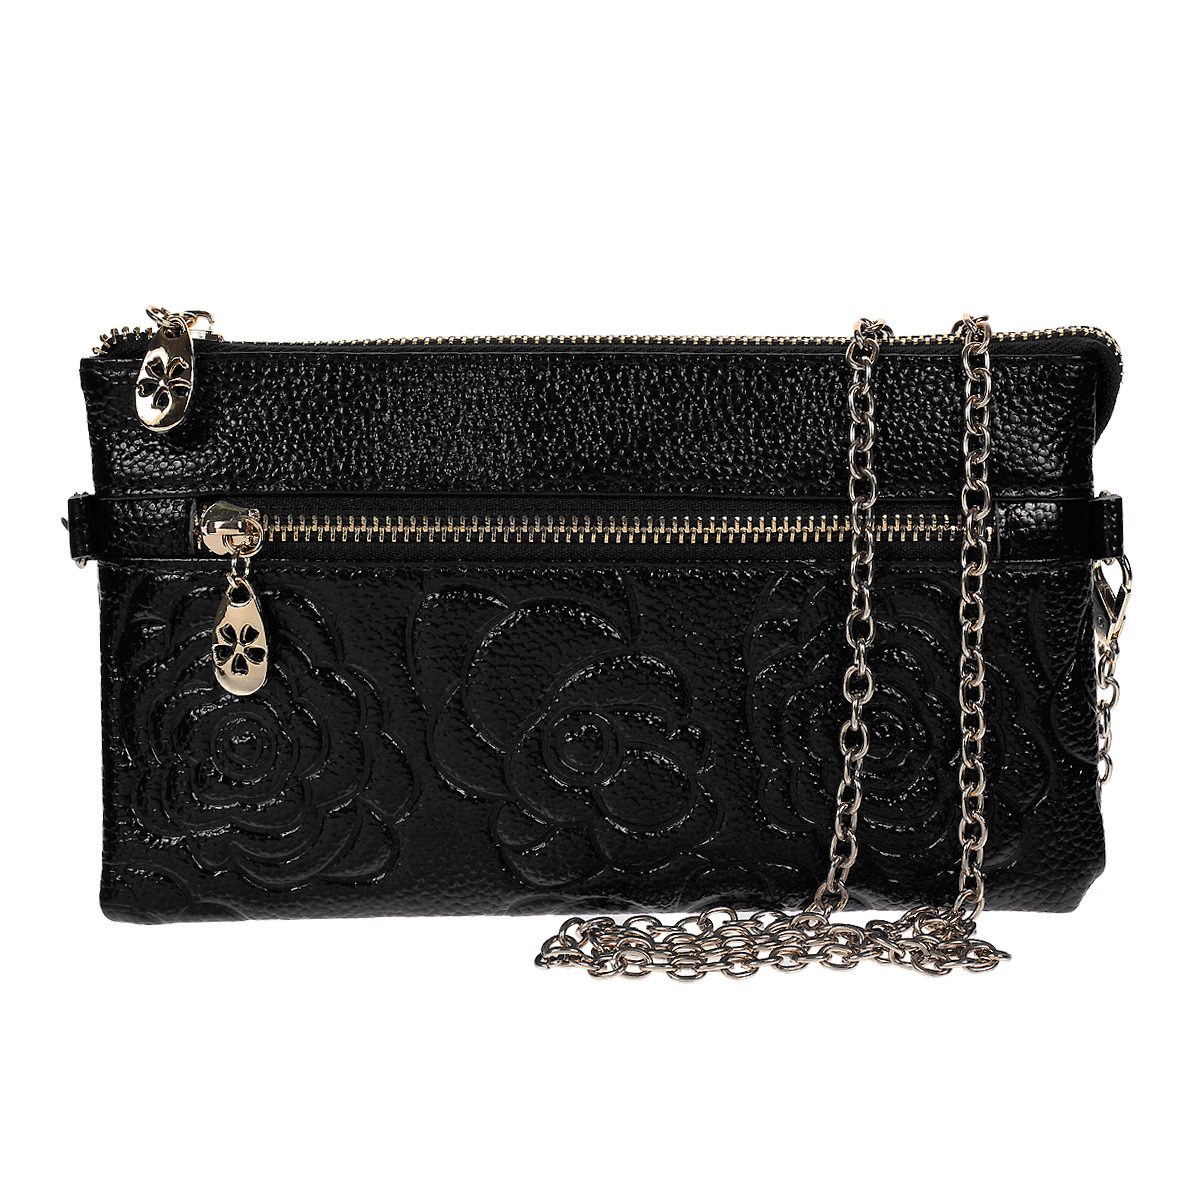 Клатч "Fancy's Bag", цвет: черный. K-801-04 - купить по доступной цене с доставкой на дом в интернет магазине OZON.ru